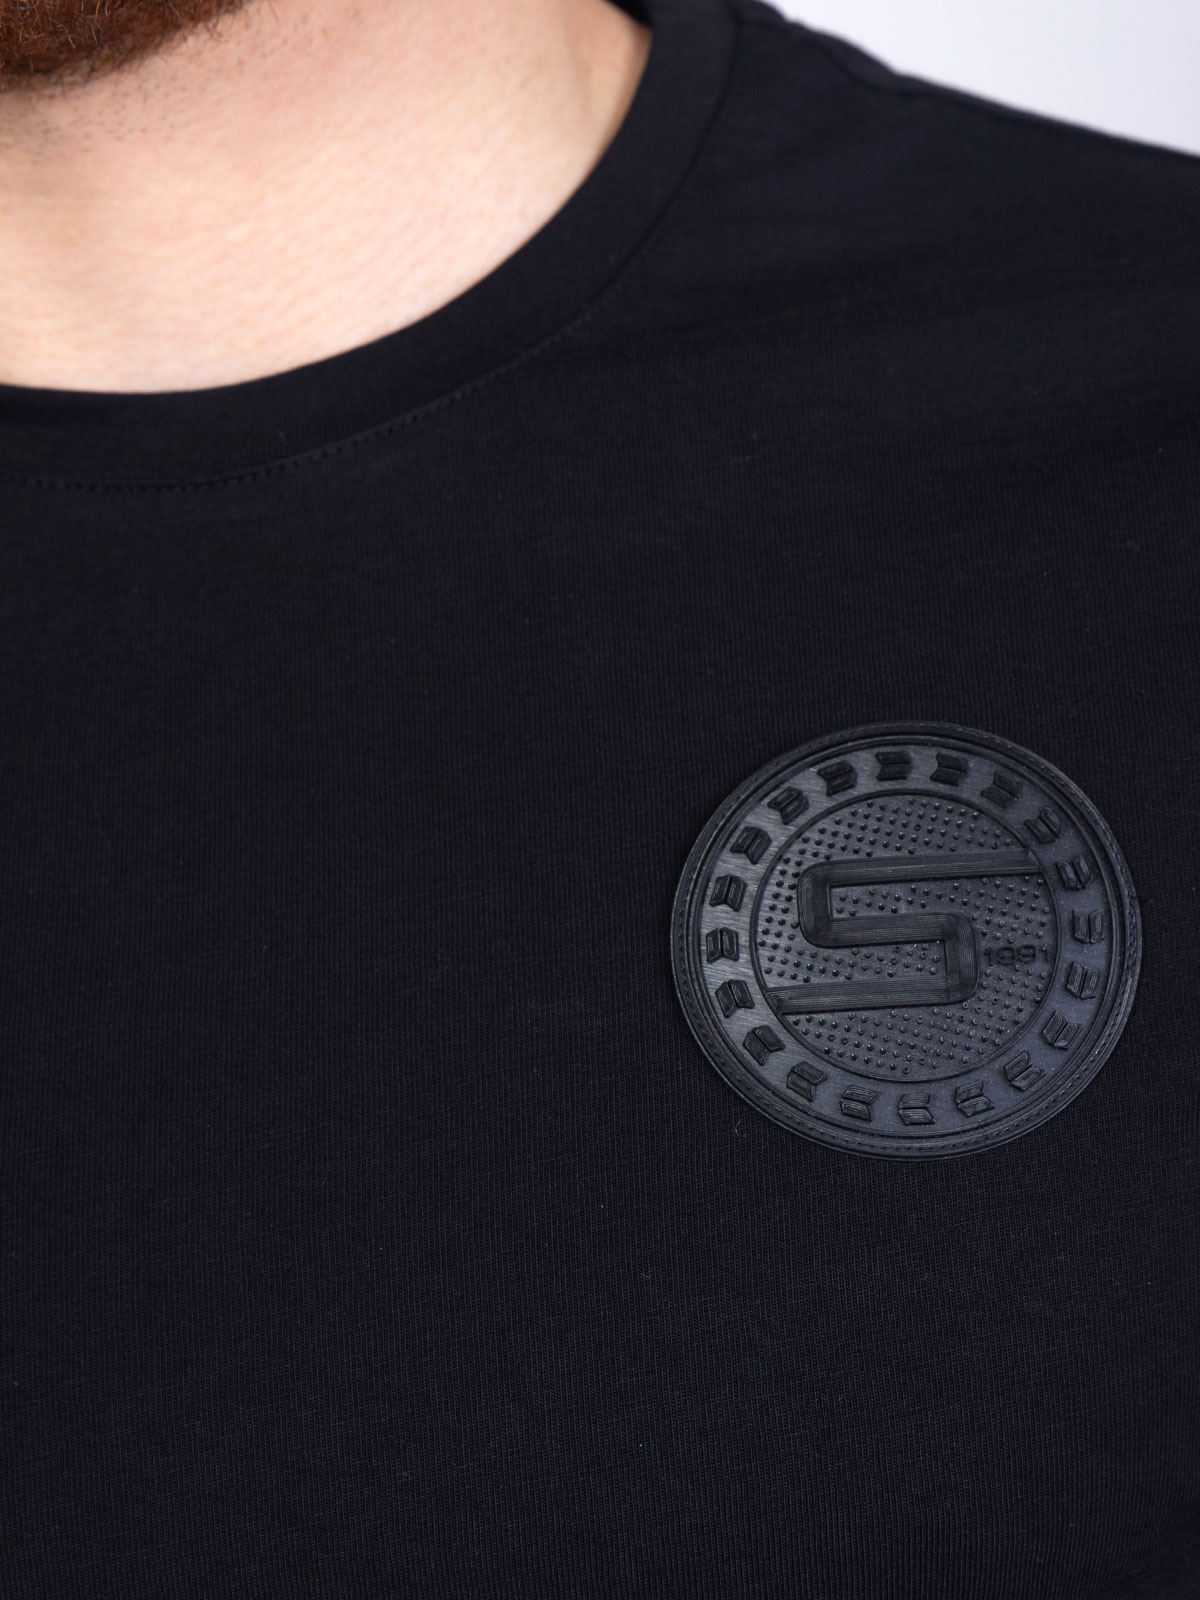 Μαύρη κοντομάνικη μπλούζα με σήμα - 96386 € 11.81 img3